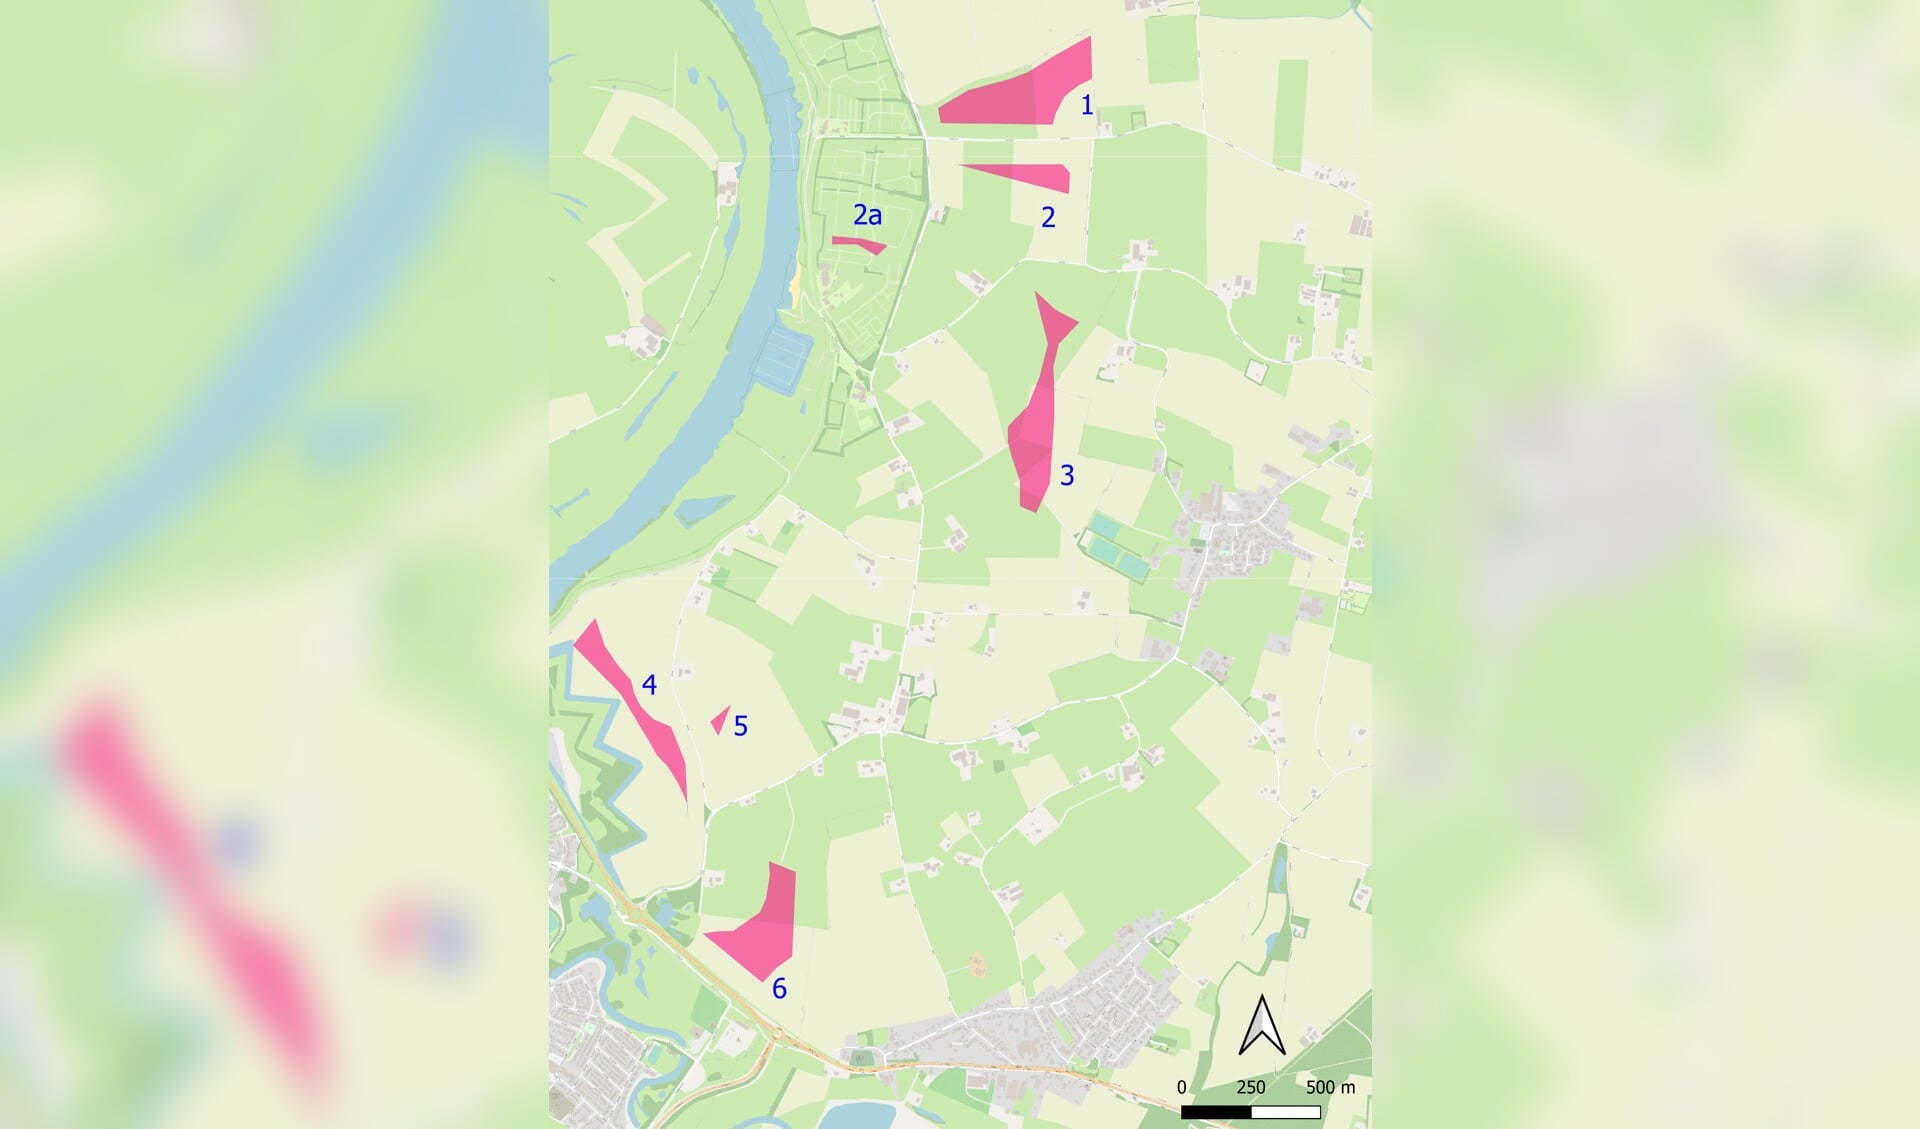 Op deze kaart staan de beoogde locaties voor windmolens vanuit de gemeente Doesburg. In verband met diverse regelgeving en adviezen lijken er een aantal locaties op voorhand niet haalbaar. Kaart: © OpenStreetMap-auteurs